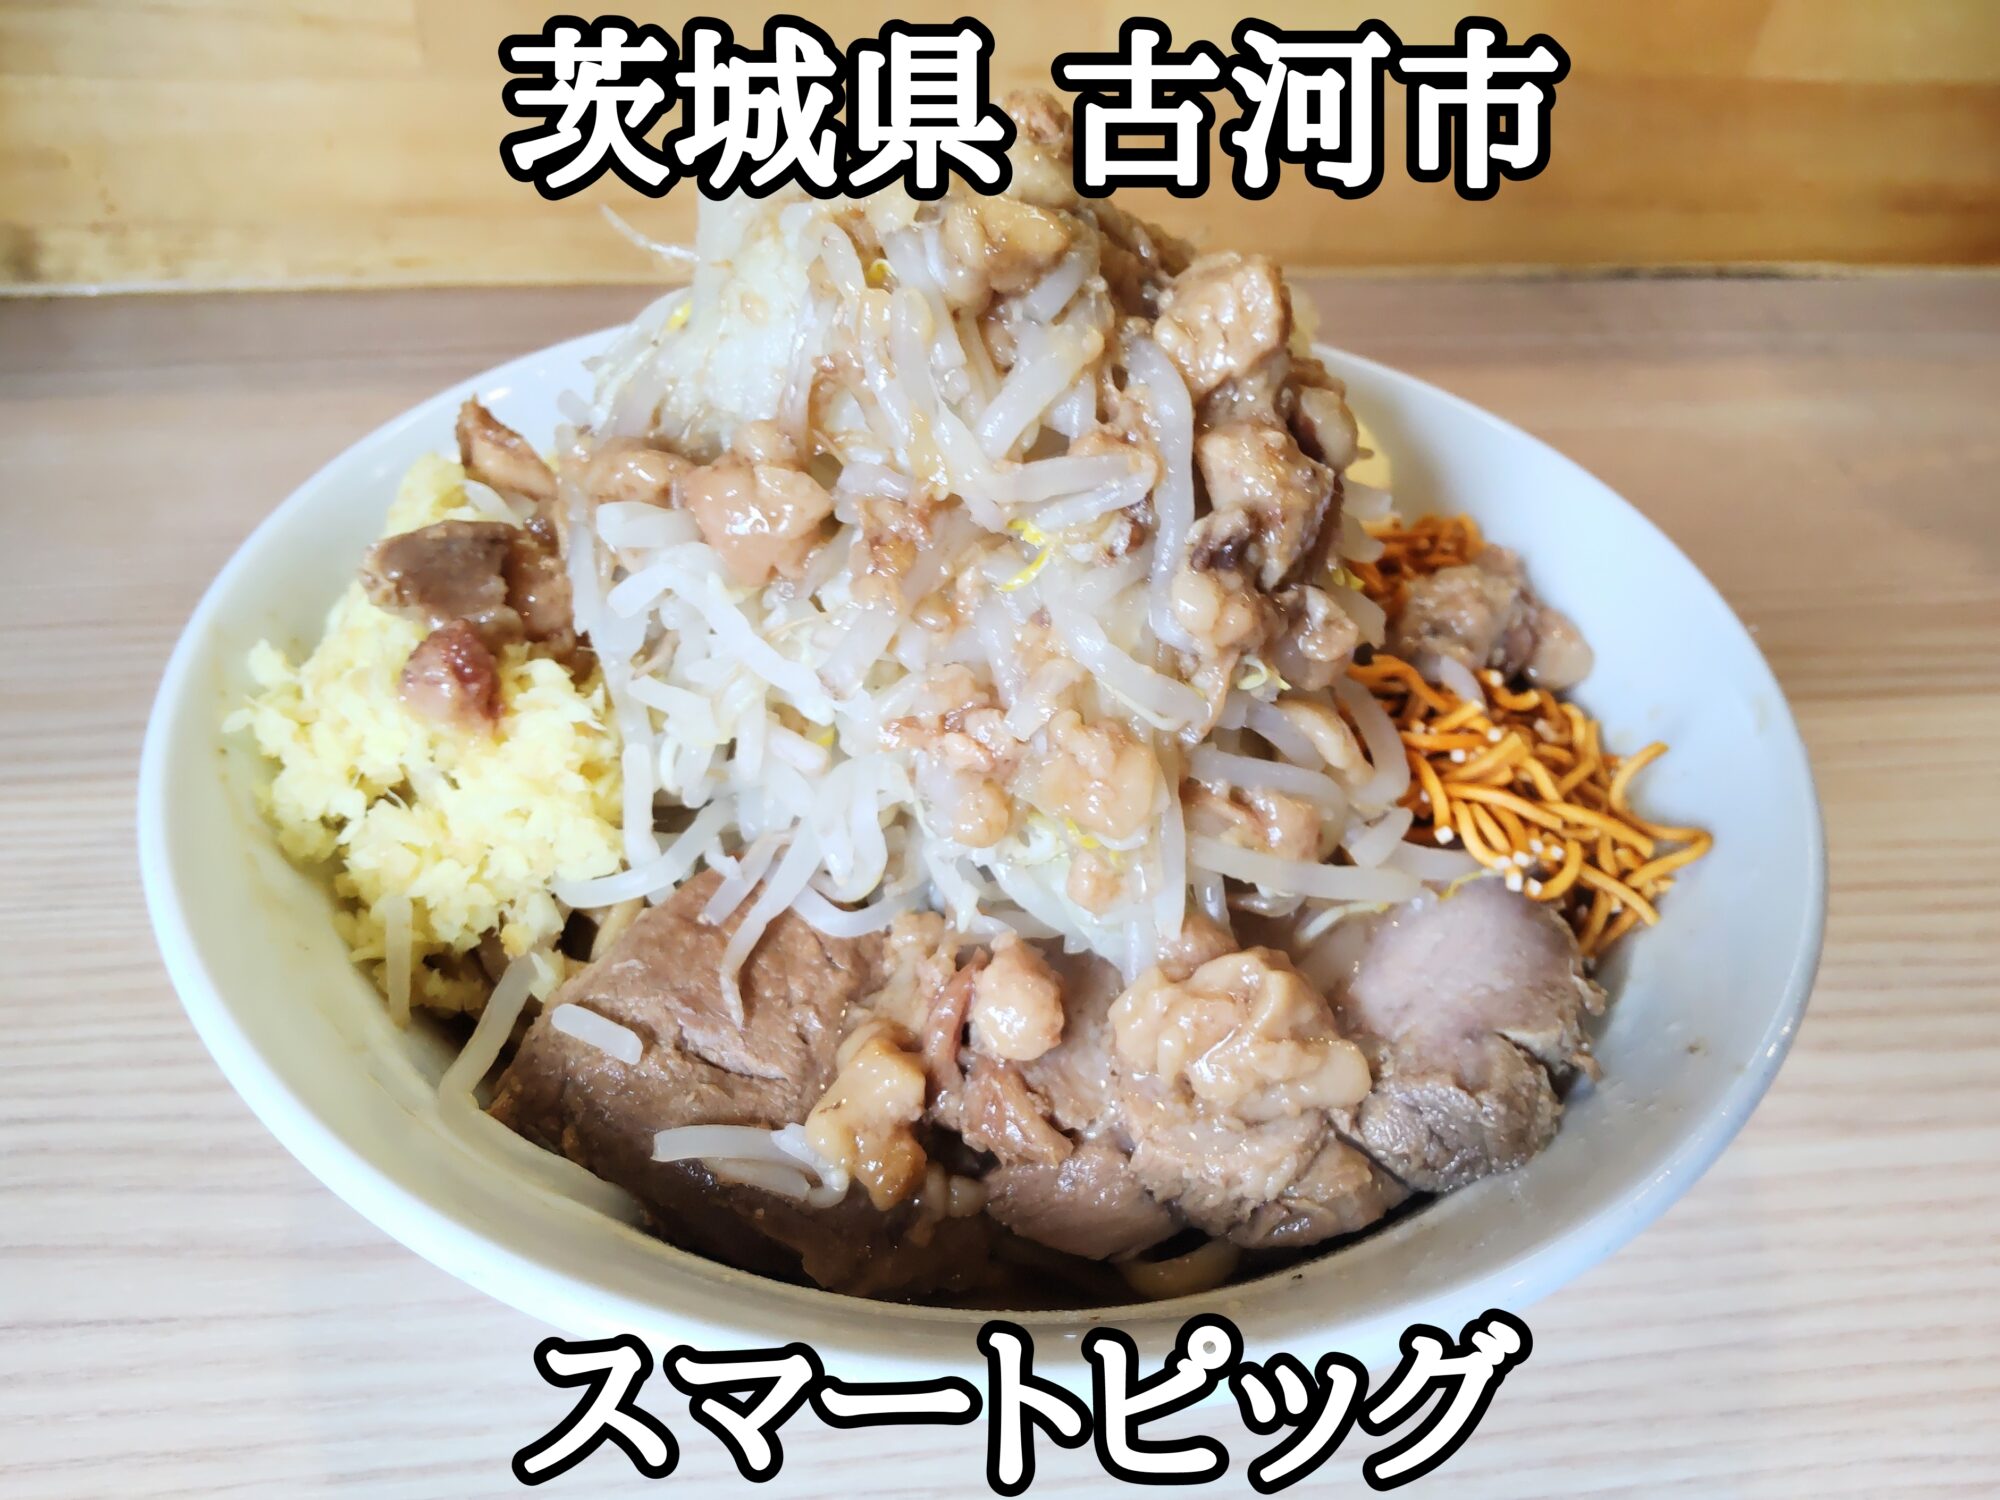 【茨城県】【古河市】「スマートピッグ」バランスの良い二郎インスパで、汁なしそばの400g野菜増しショウガ